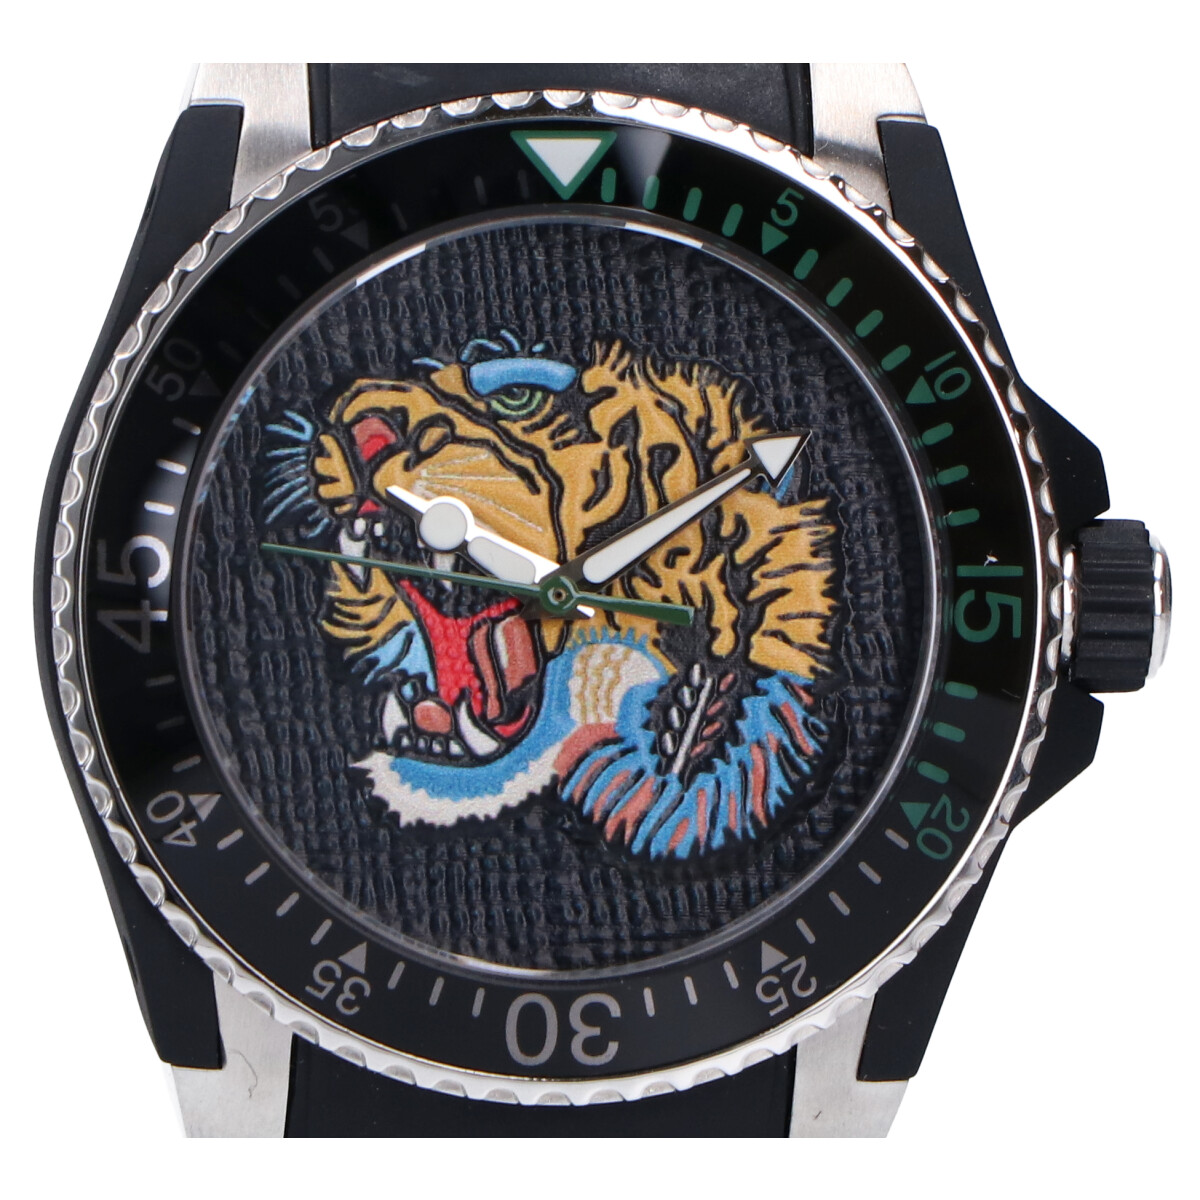 グッチのYA136318 DIVE ダイヴ タイガー クオーツ 時計 メンズの買取実績です。